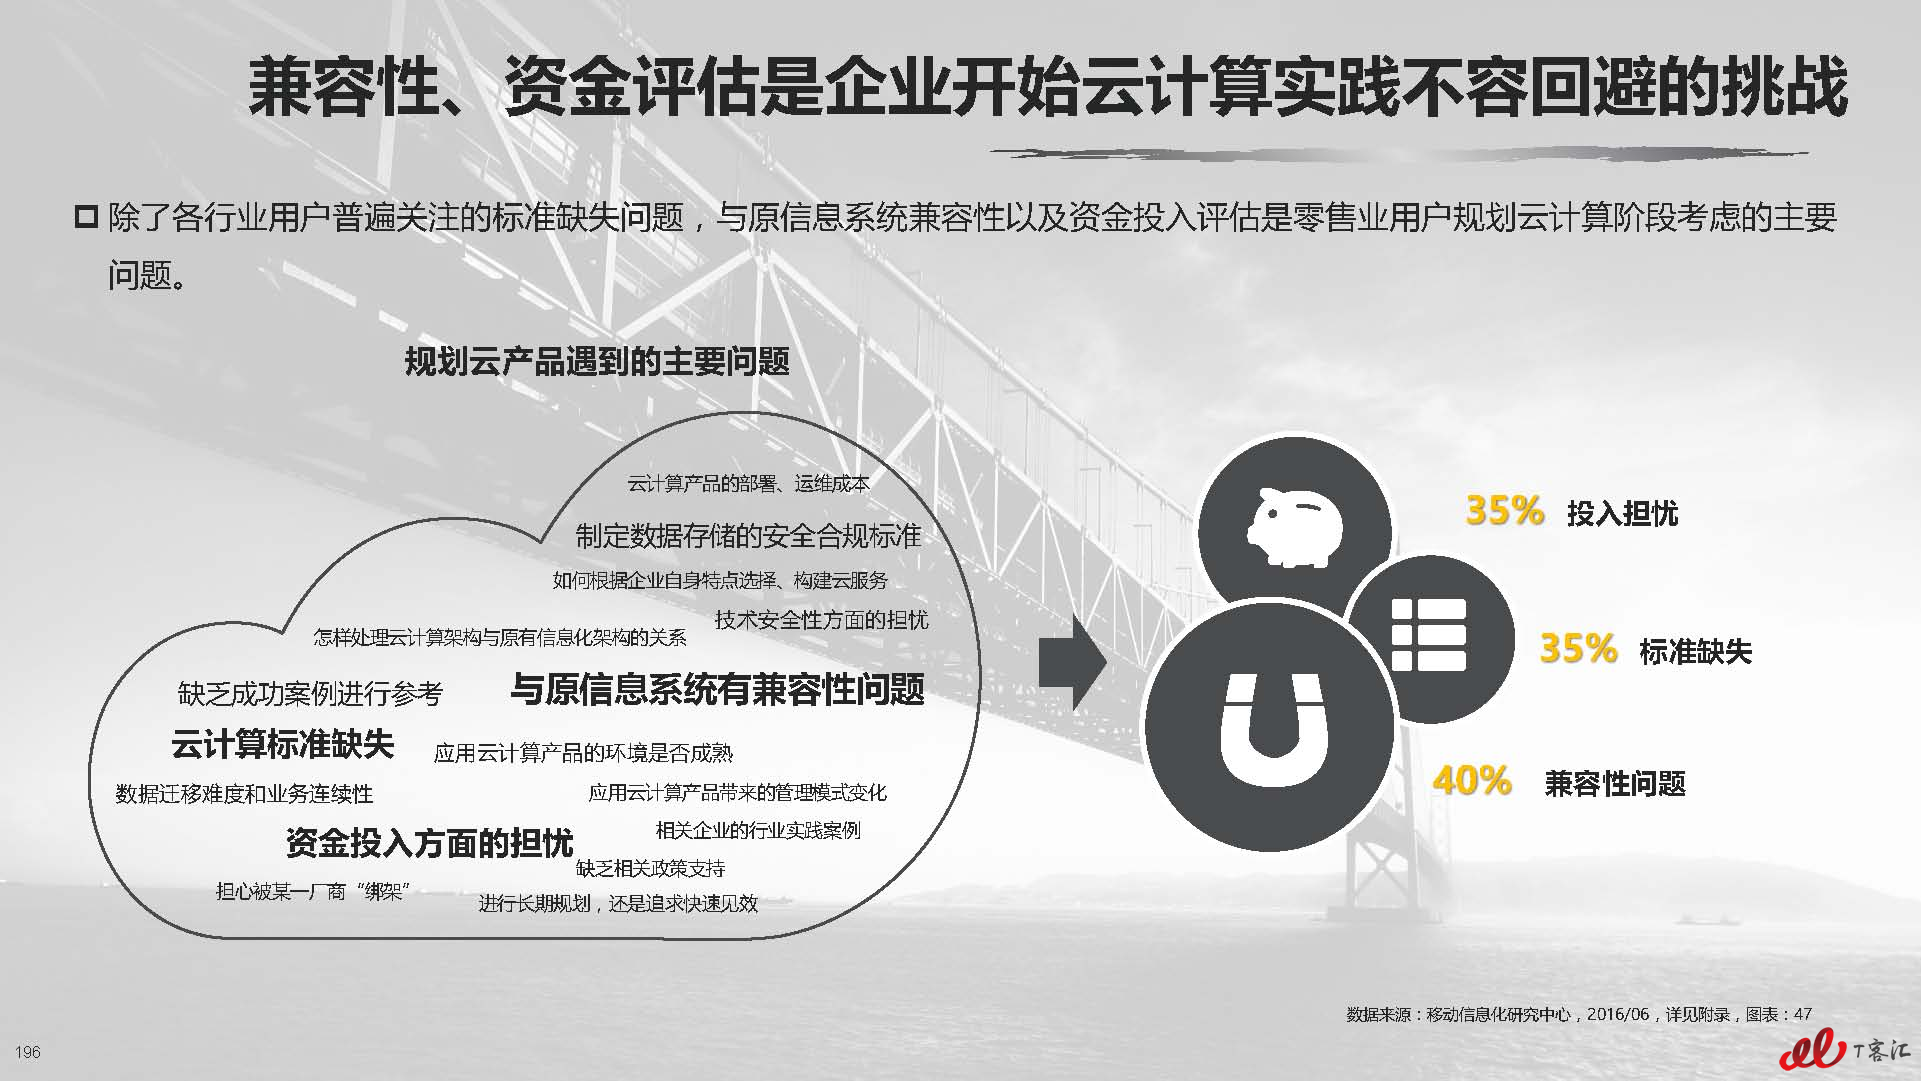 云计算中国市场实践专题研究报告vFNL_页面_197.jpg